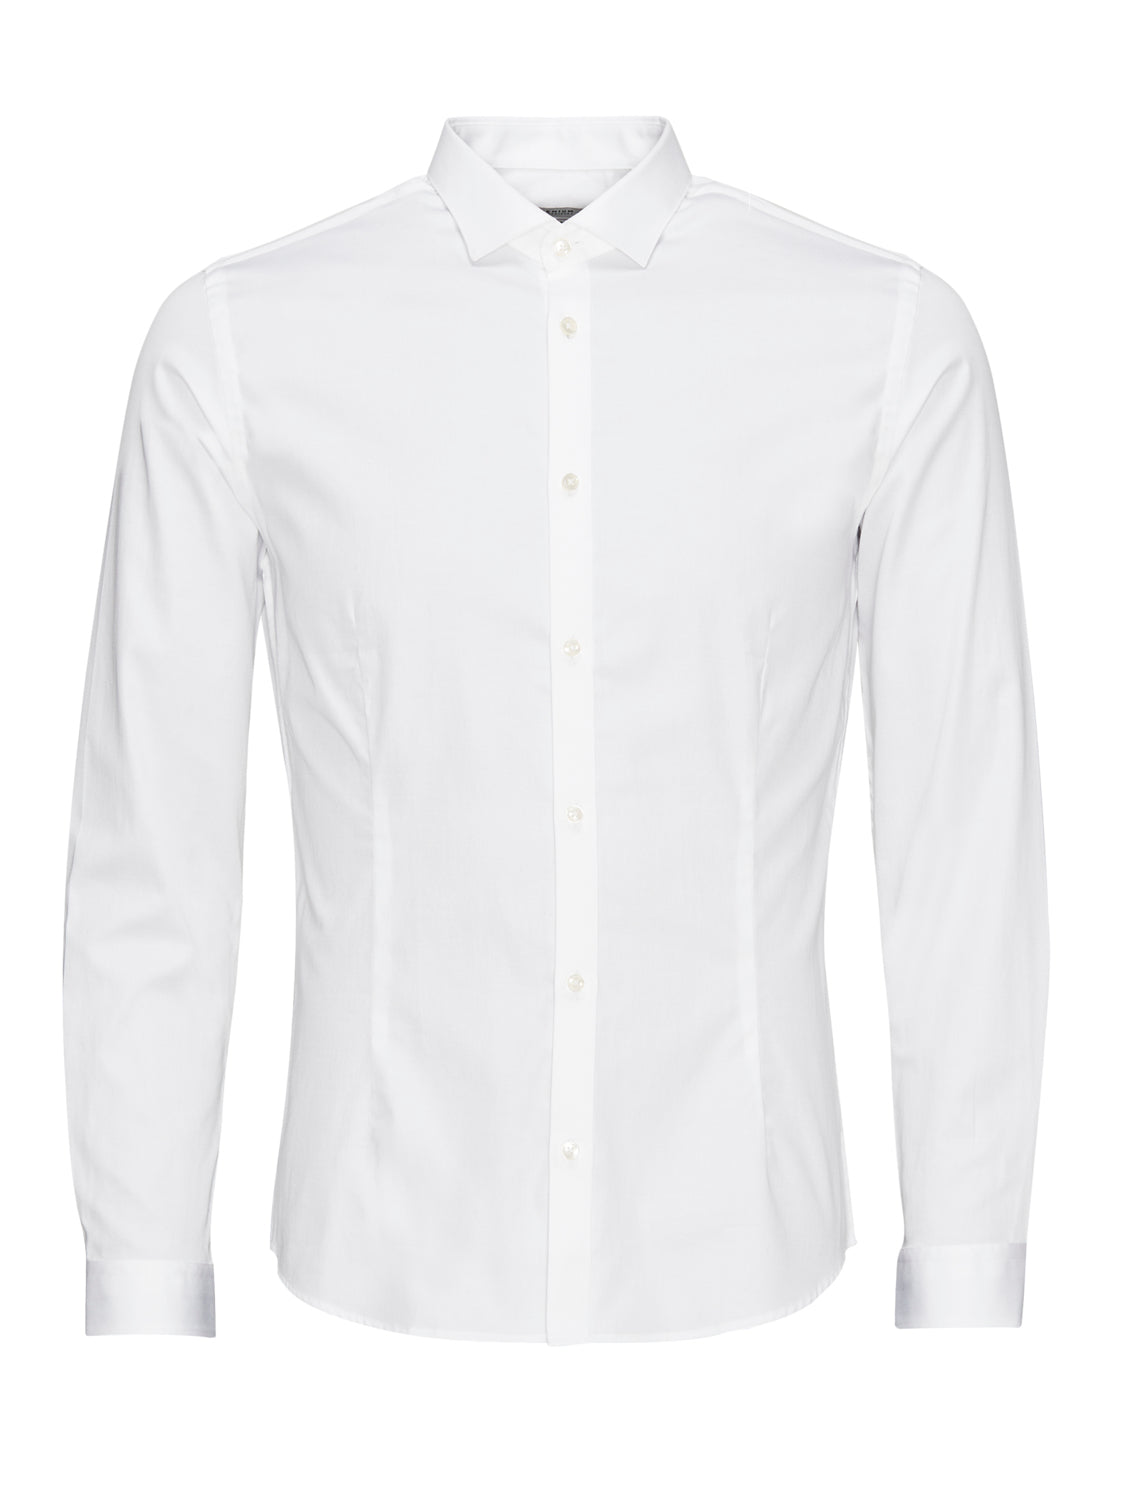 JJPRPARMA Shirts - White